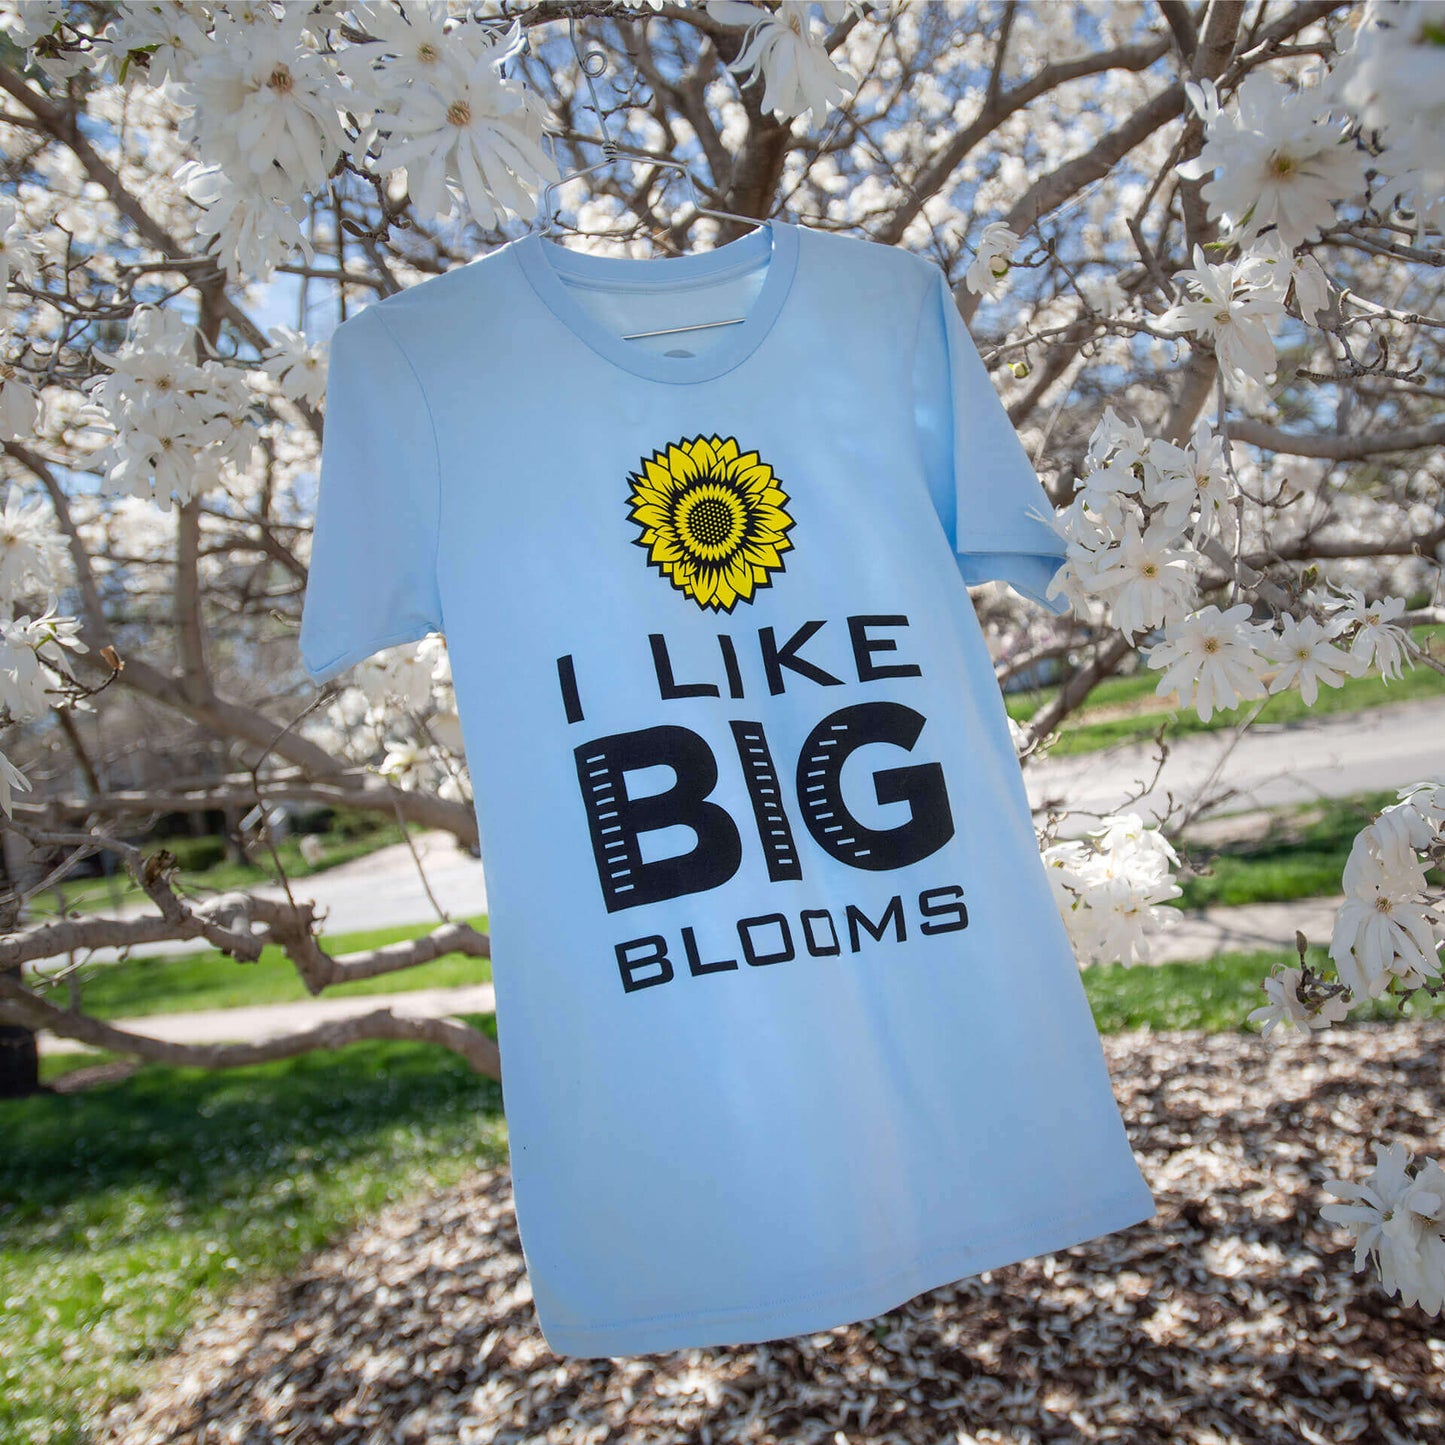 I Like Big Blooms T-shirt